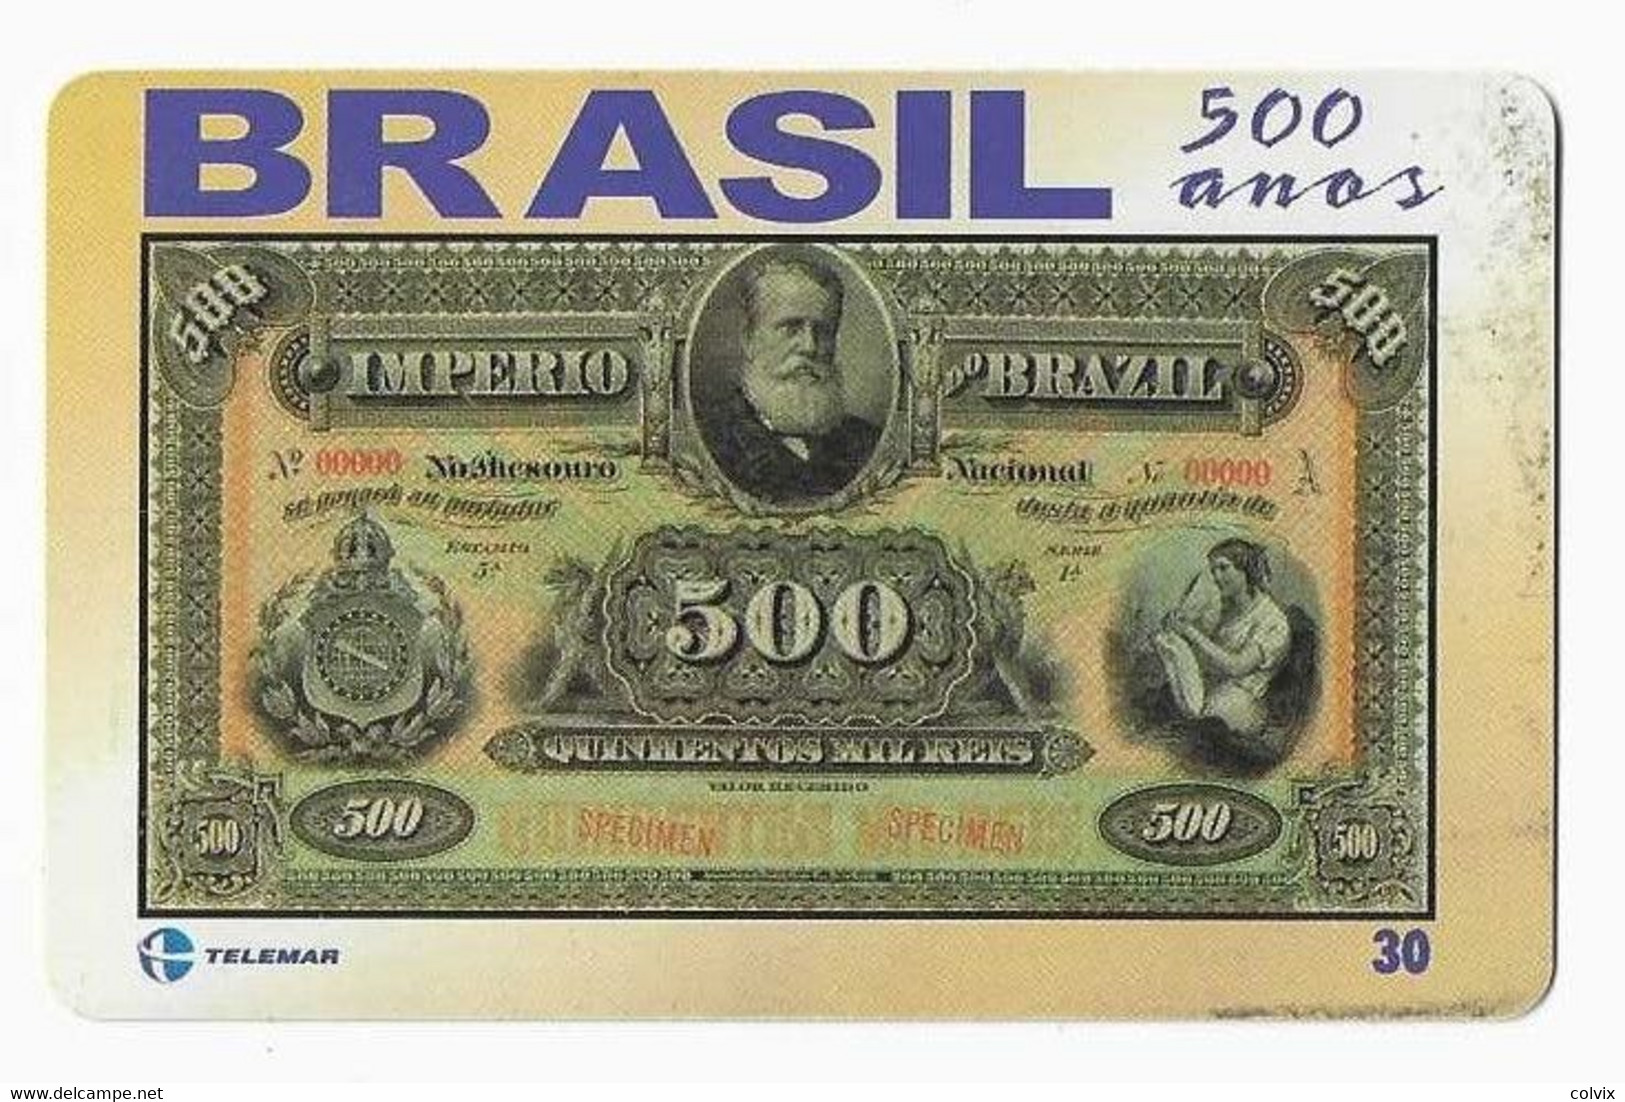 BRESIL TELECARTE BILLET DE BANQUE 1885 - Sellos & Monedas